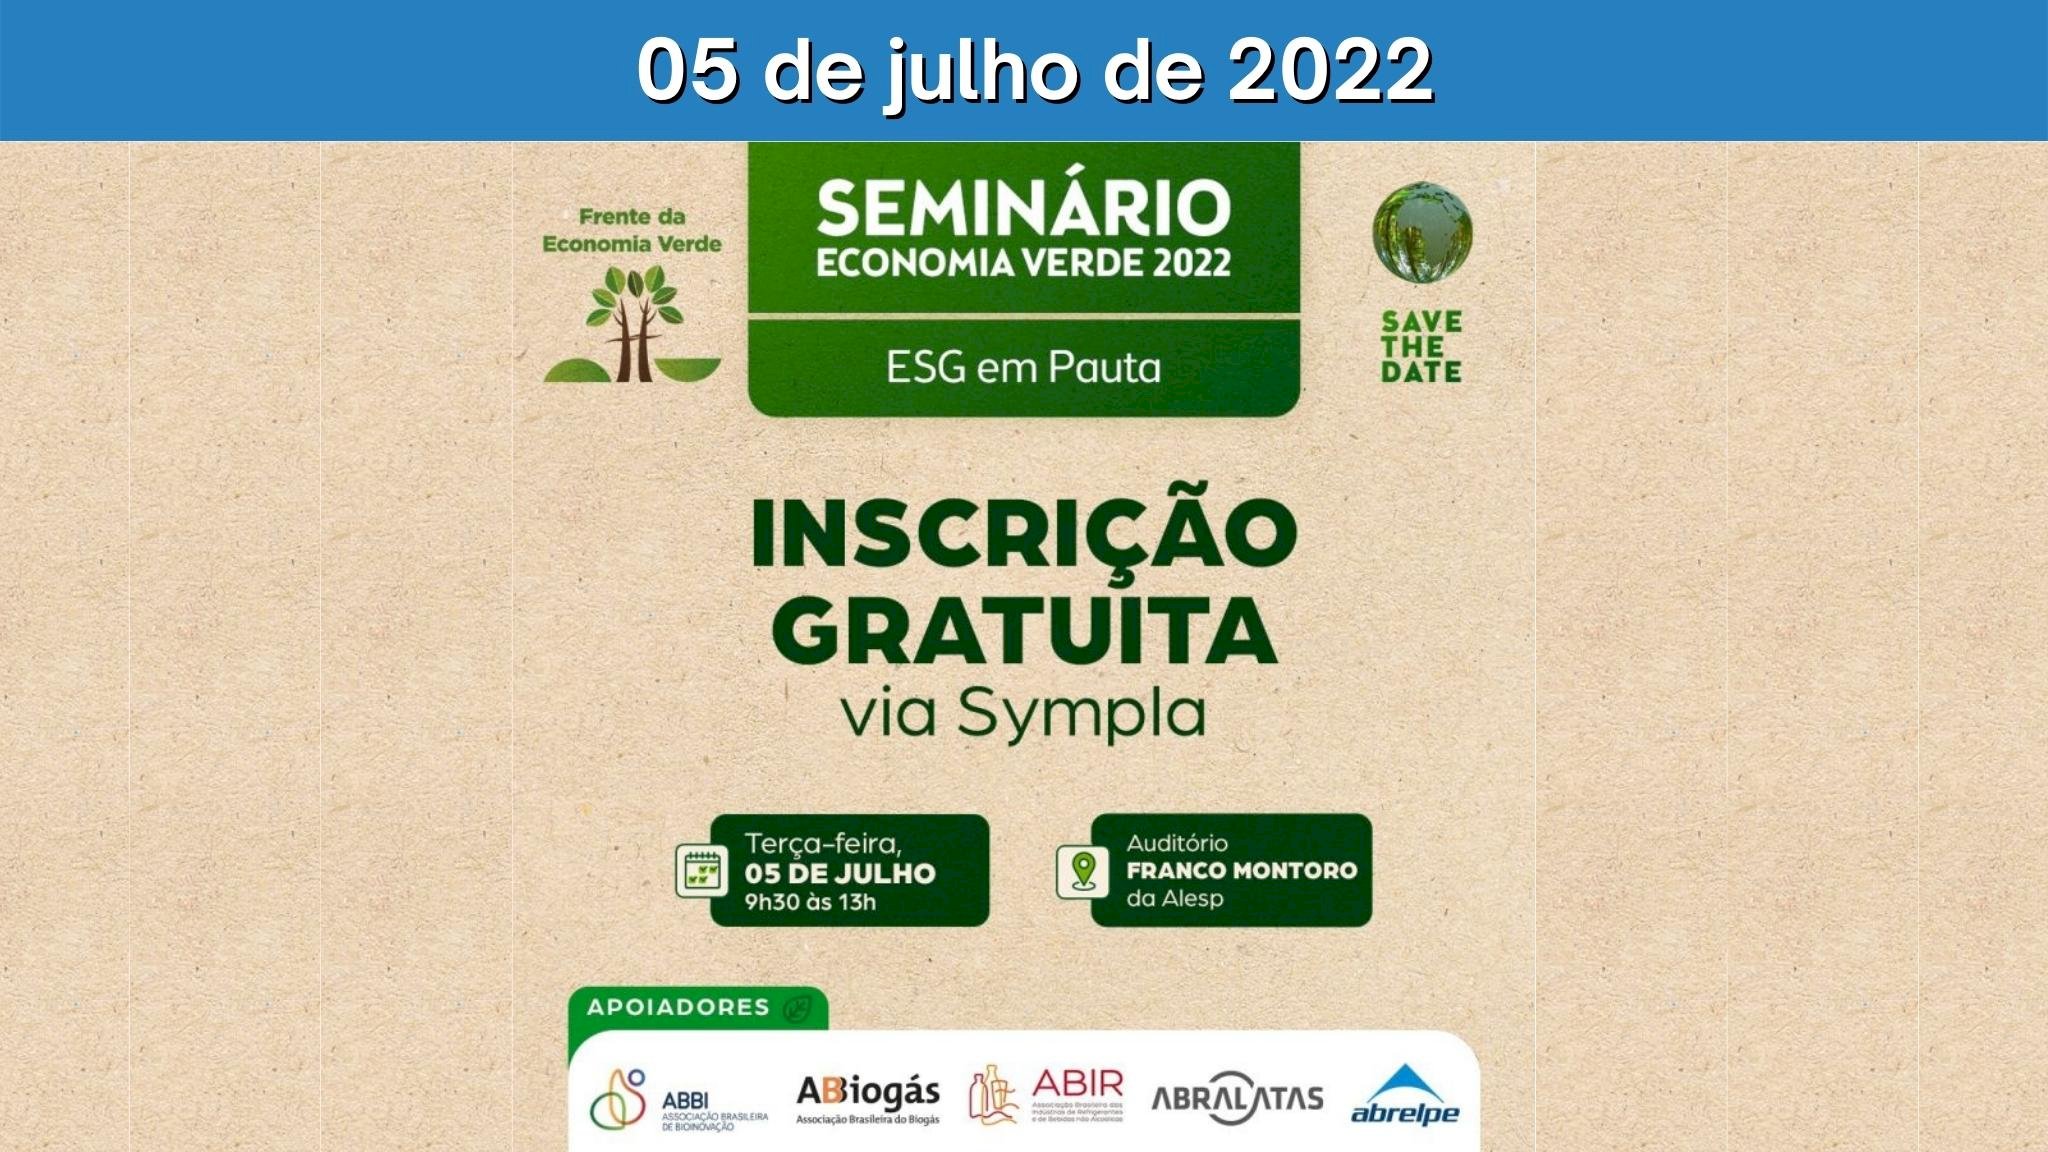 Seminário Economia Verde 2022 - ESG em Pauta